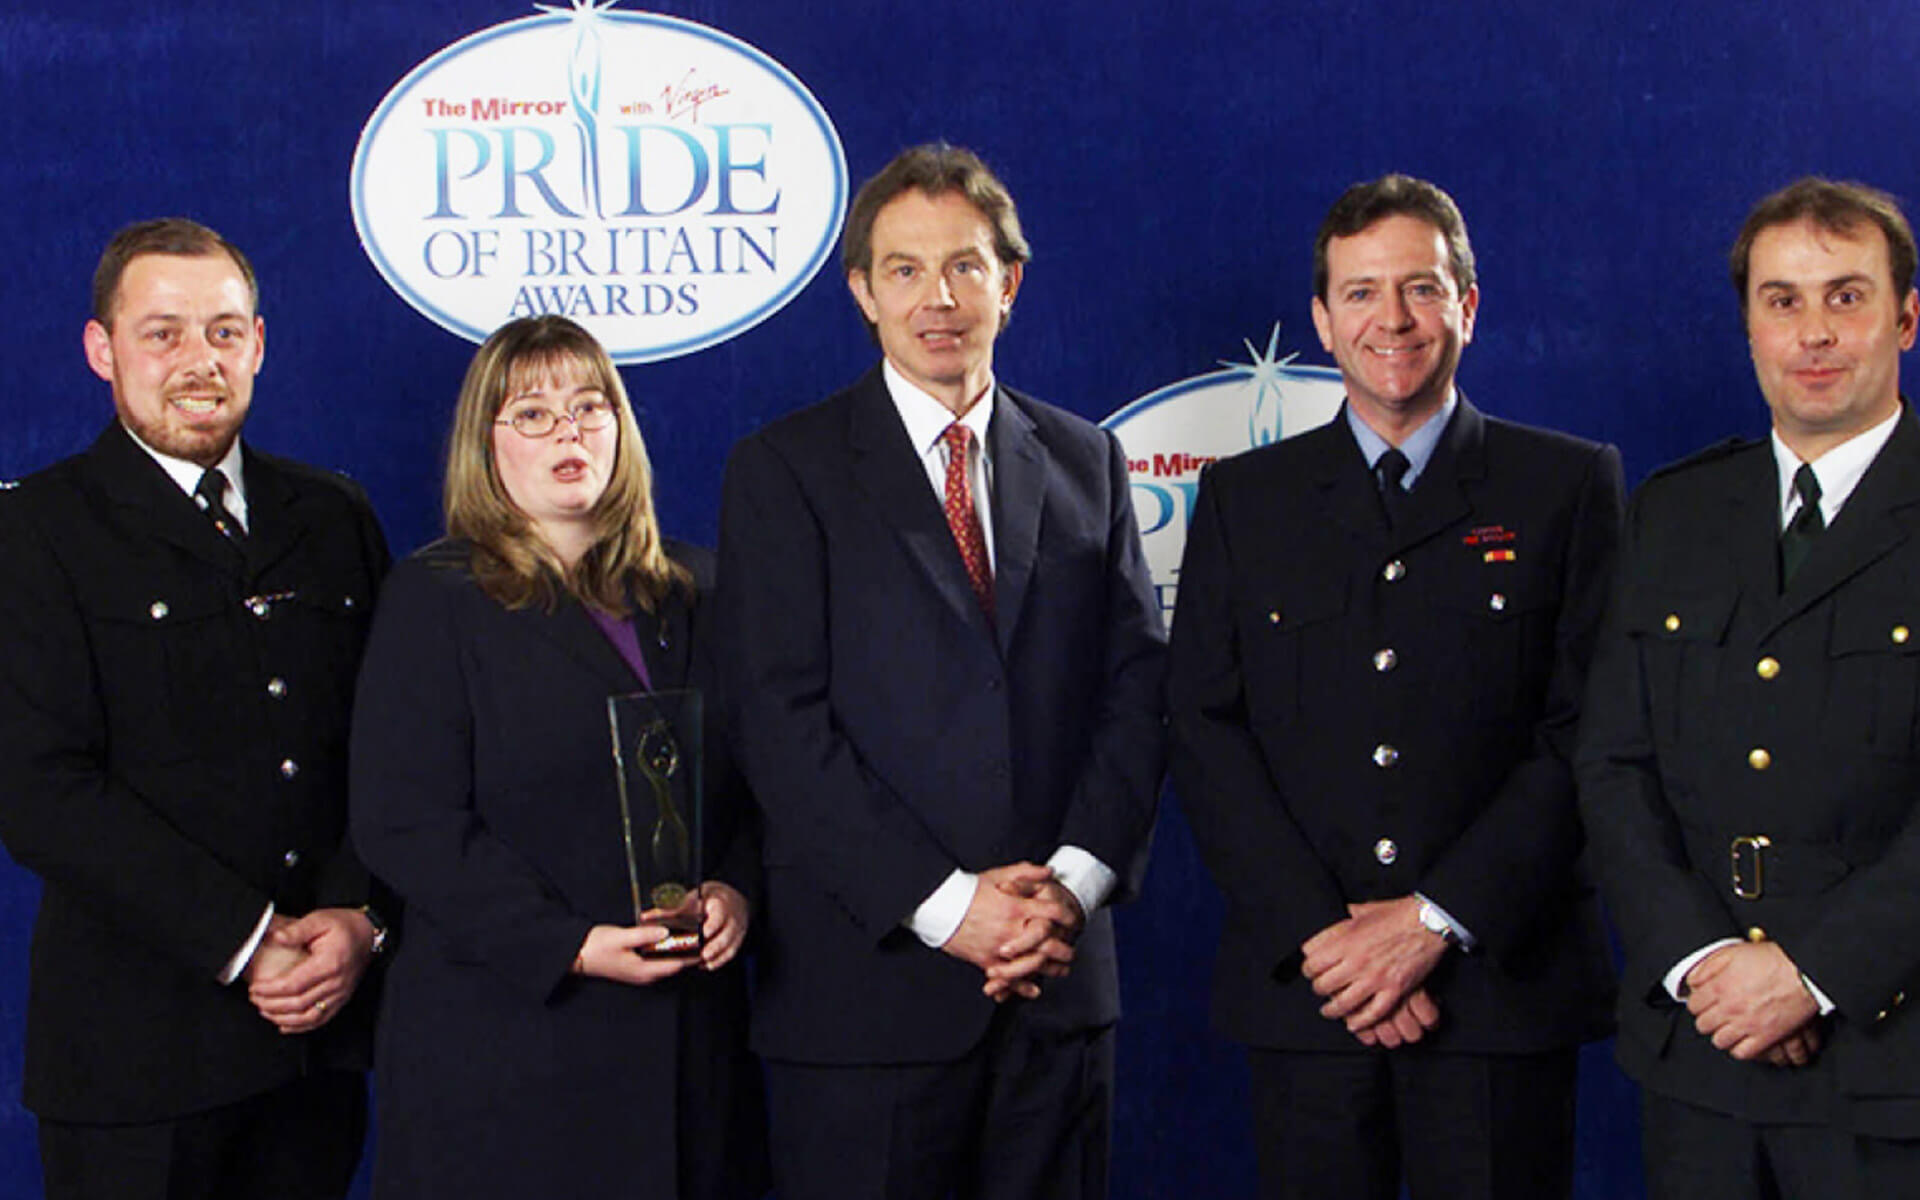 Special Award - The Heroes of Paddington